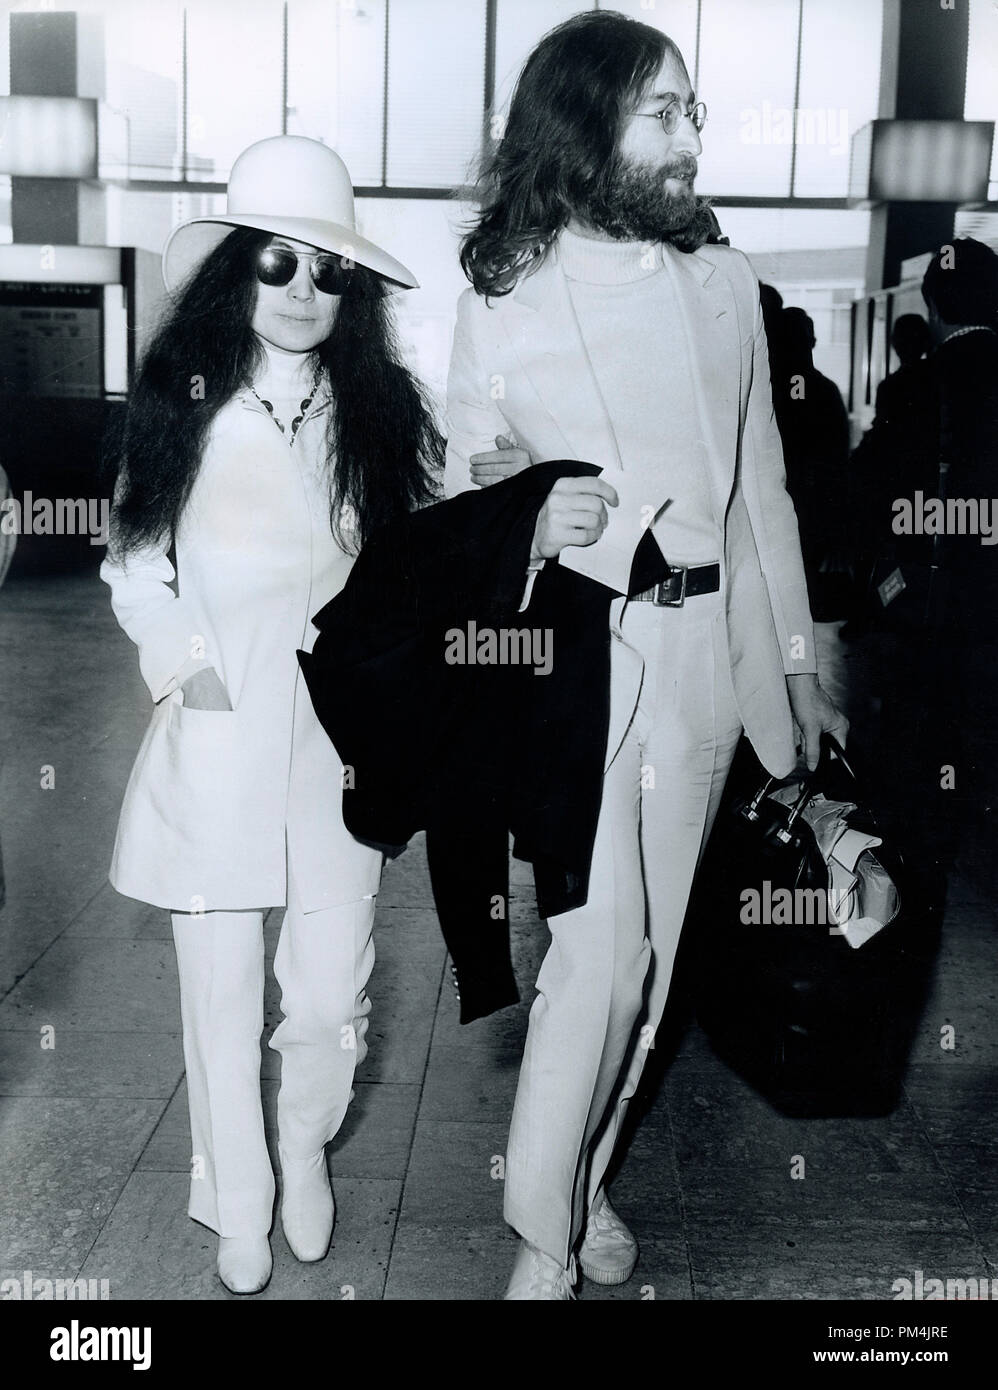 John Lennon et Yoko Ono, avril1969. Référence # 1013 Fichier 017 THA © CCR /Le Hollywood Archive - Tous droits réservés. Banque D'Images